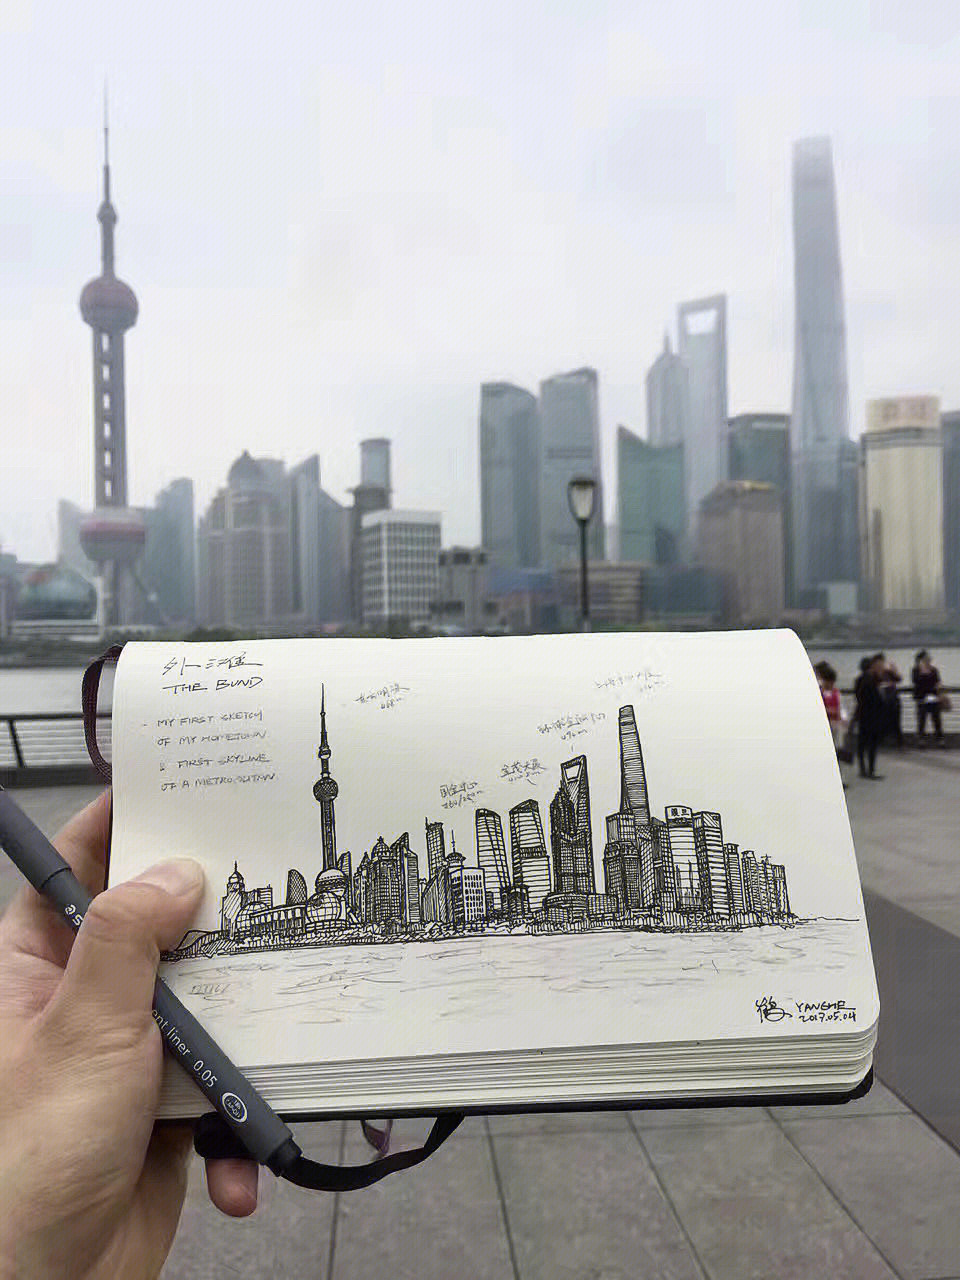 上海武康大楼简笔画图片